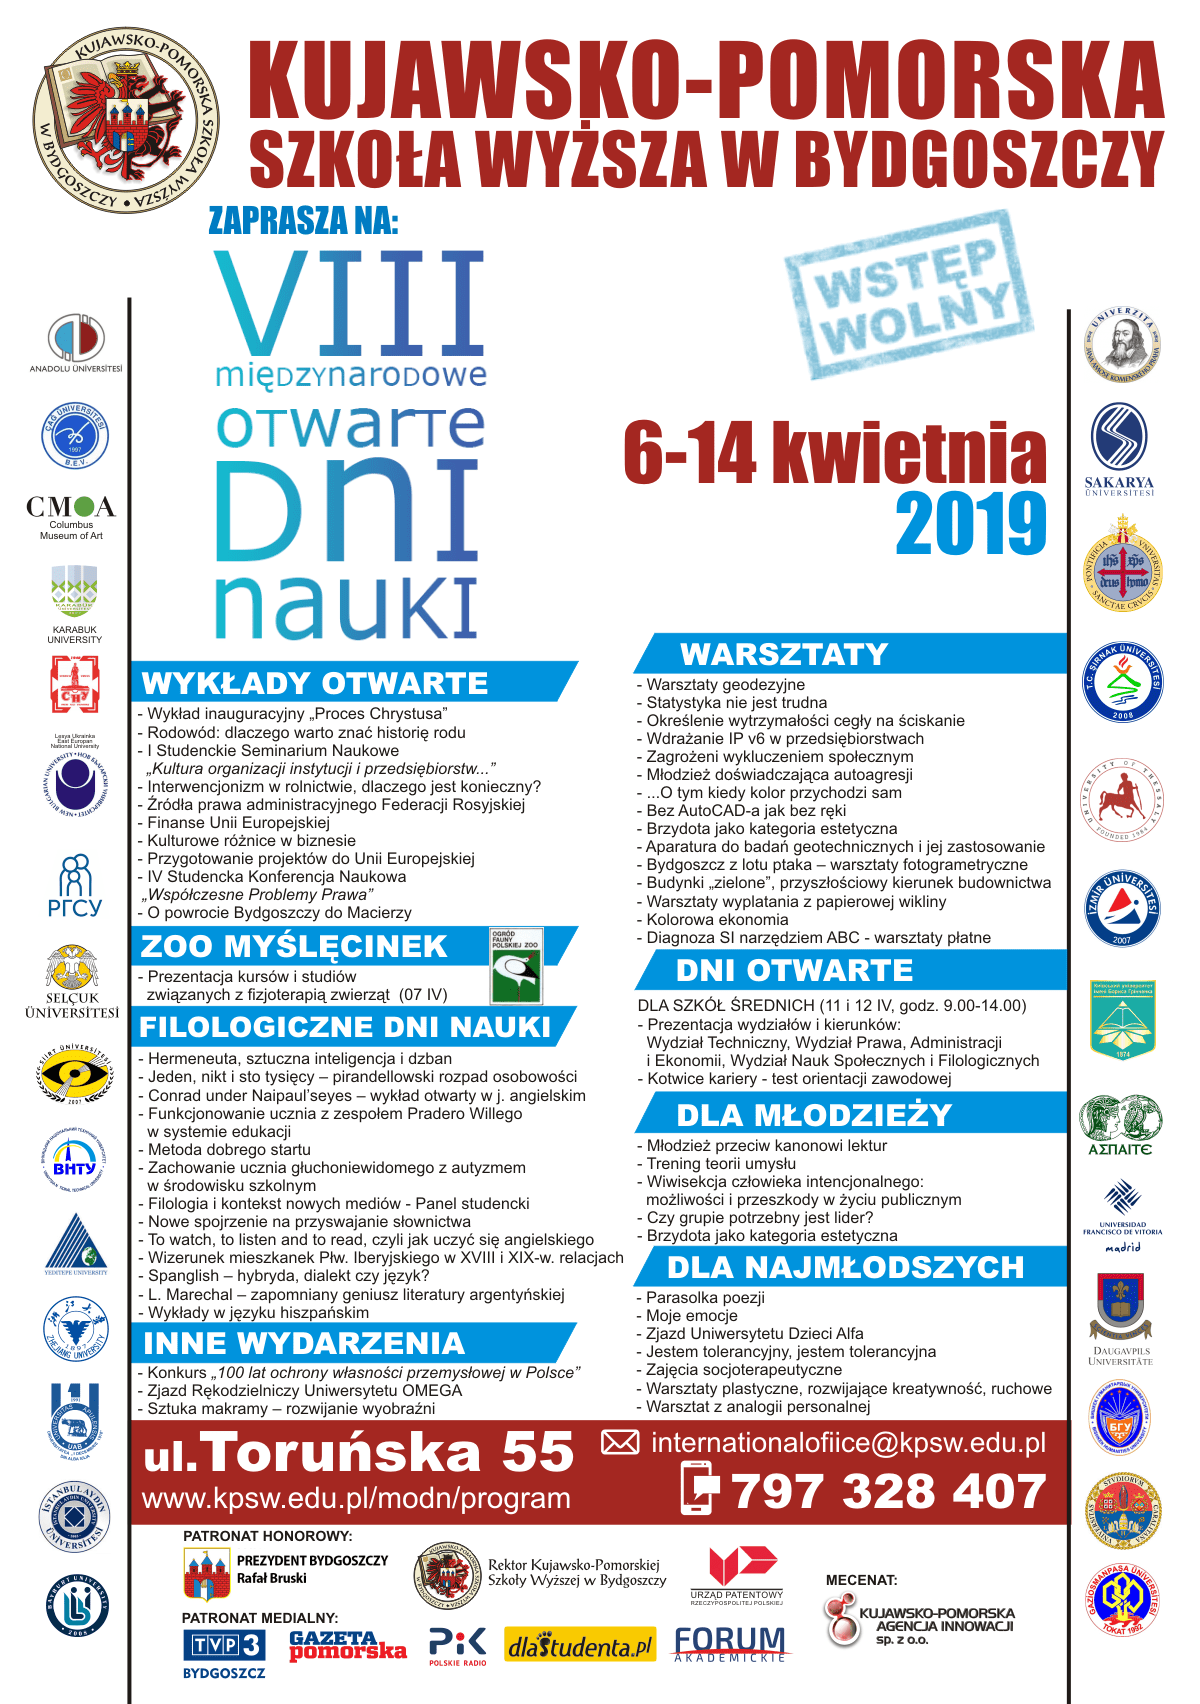 VIII Międzynarodowe Otwarte Dni Nauki w Kujawsko-Pomorskiej Szkole Wyższej w tym roku odbywać się będą od 6 kwietnia do 14 kwietnia